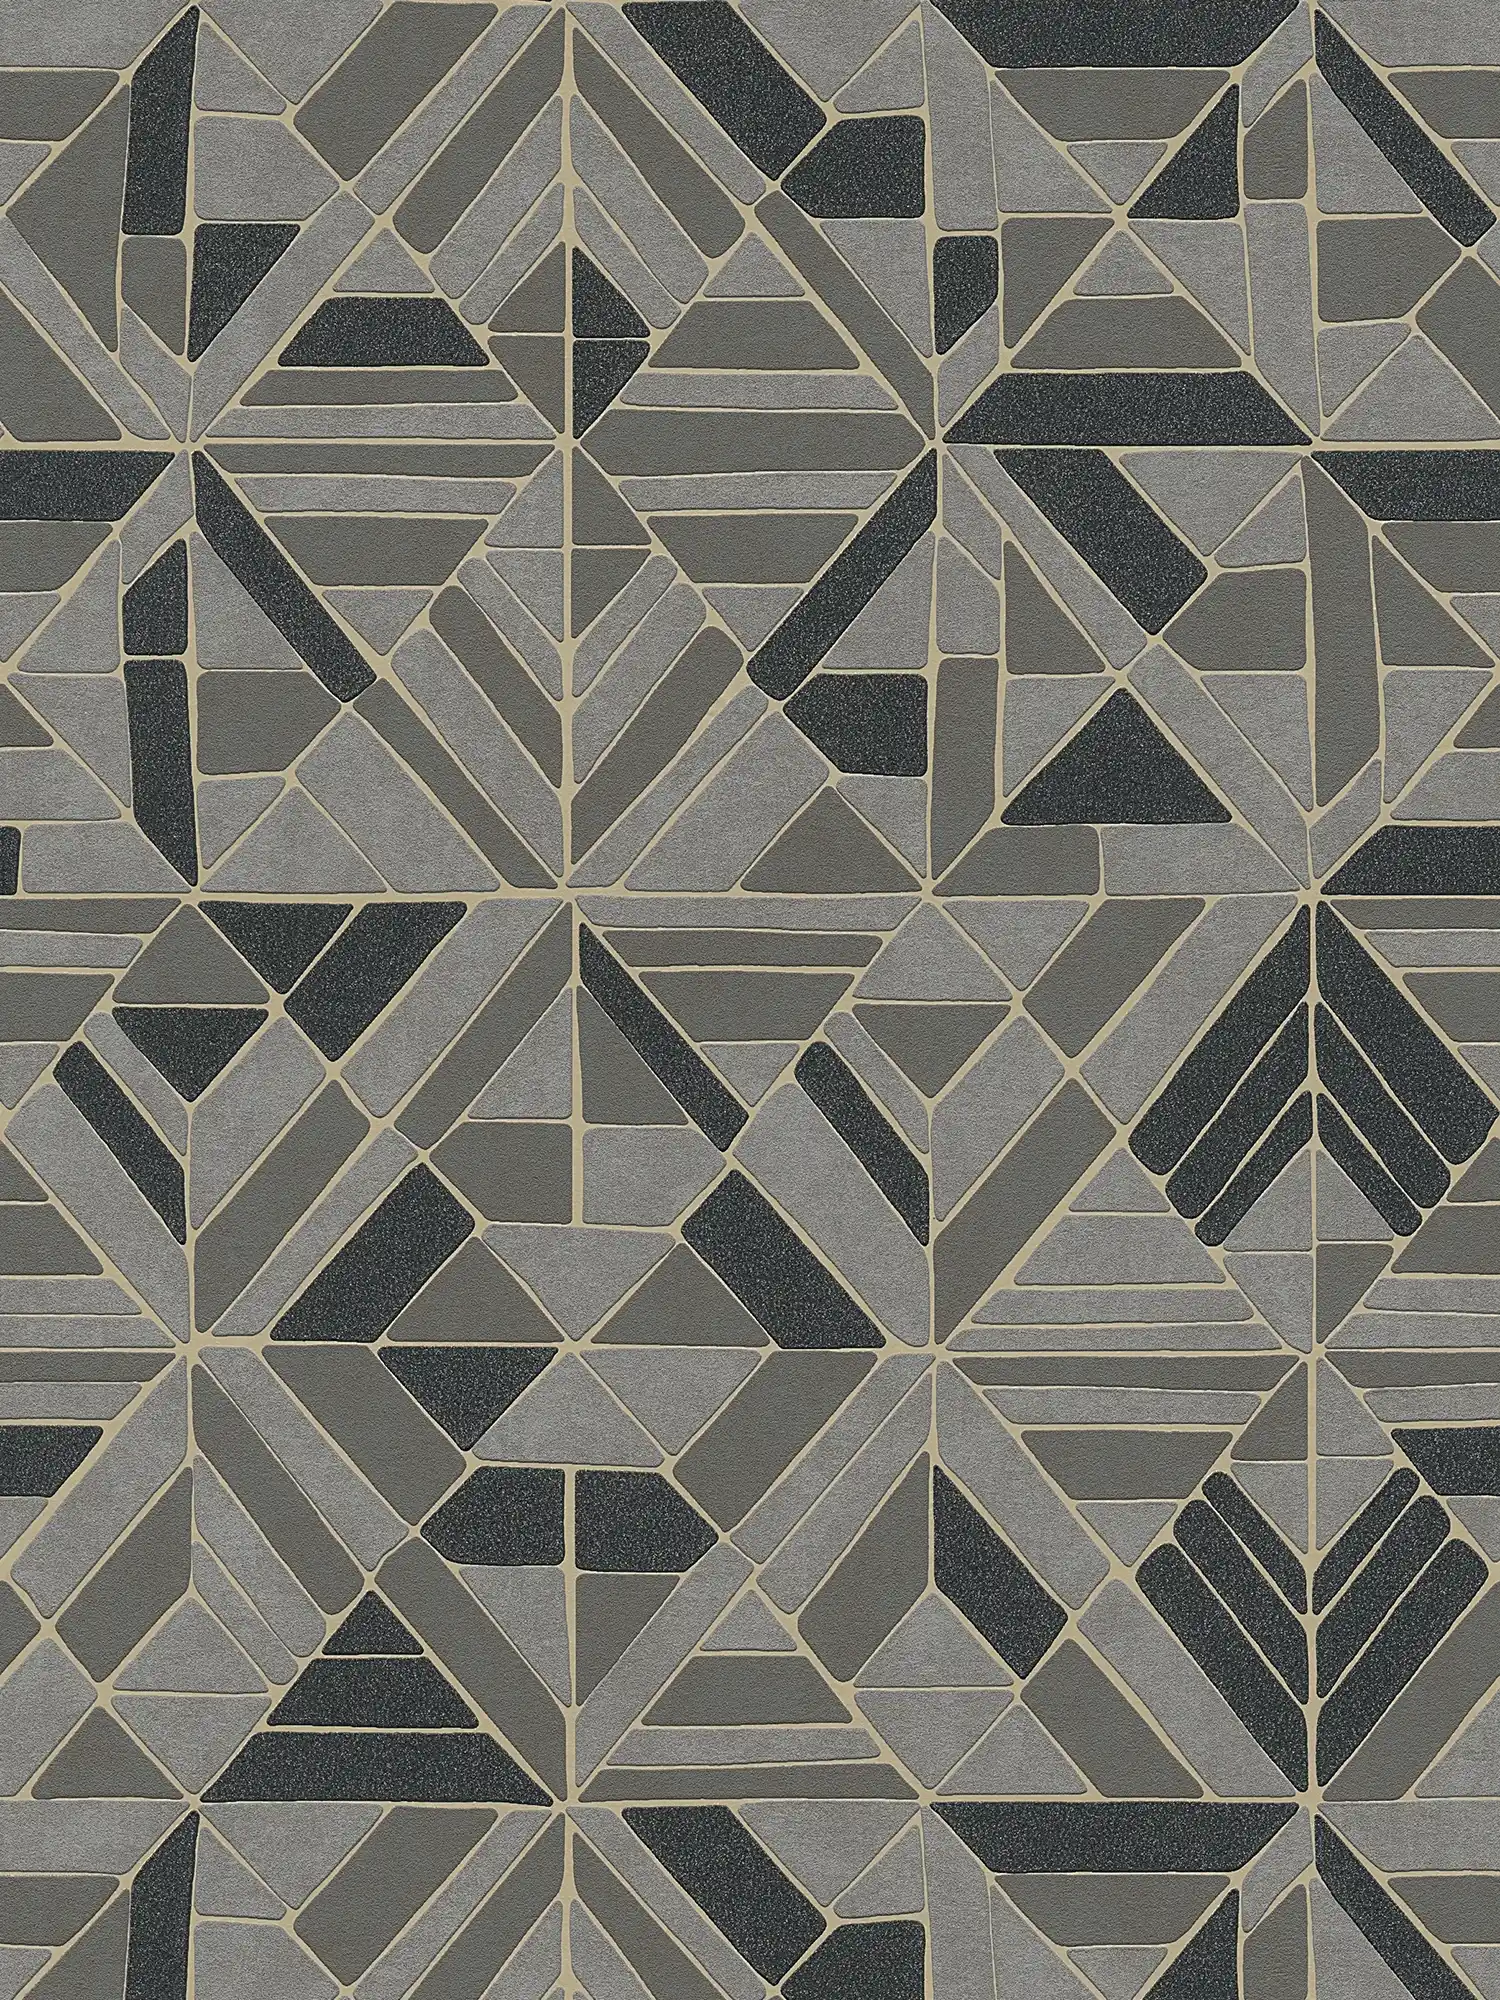 Papier peint motifs géométriques & accents métalliques - marron, noir, or
